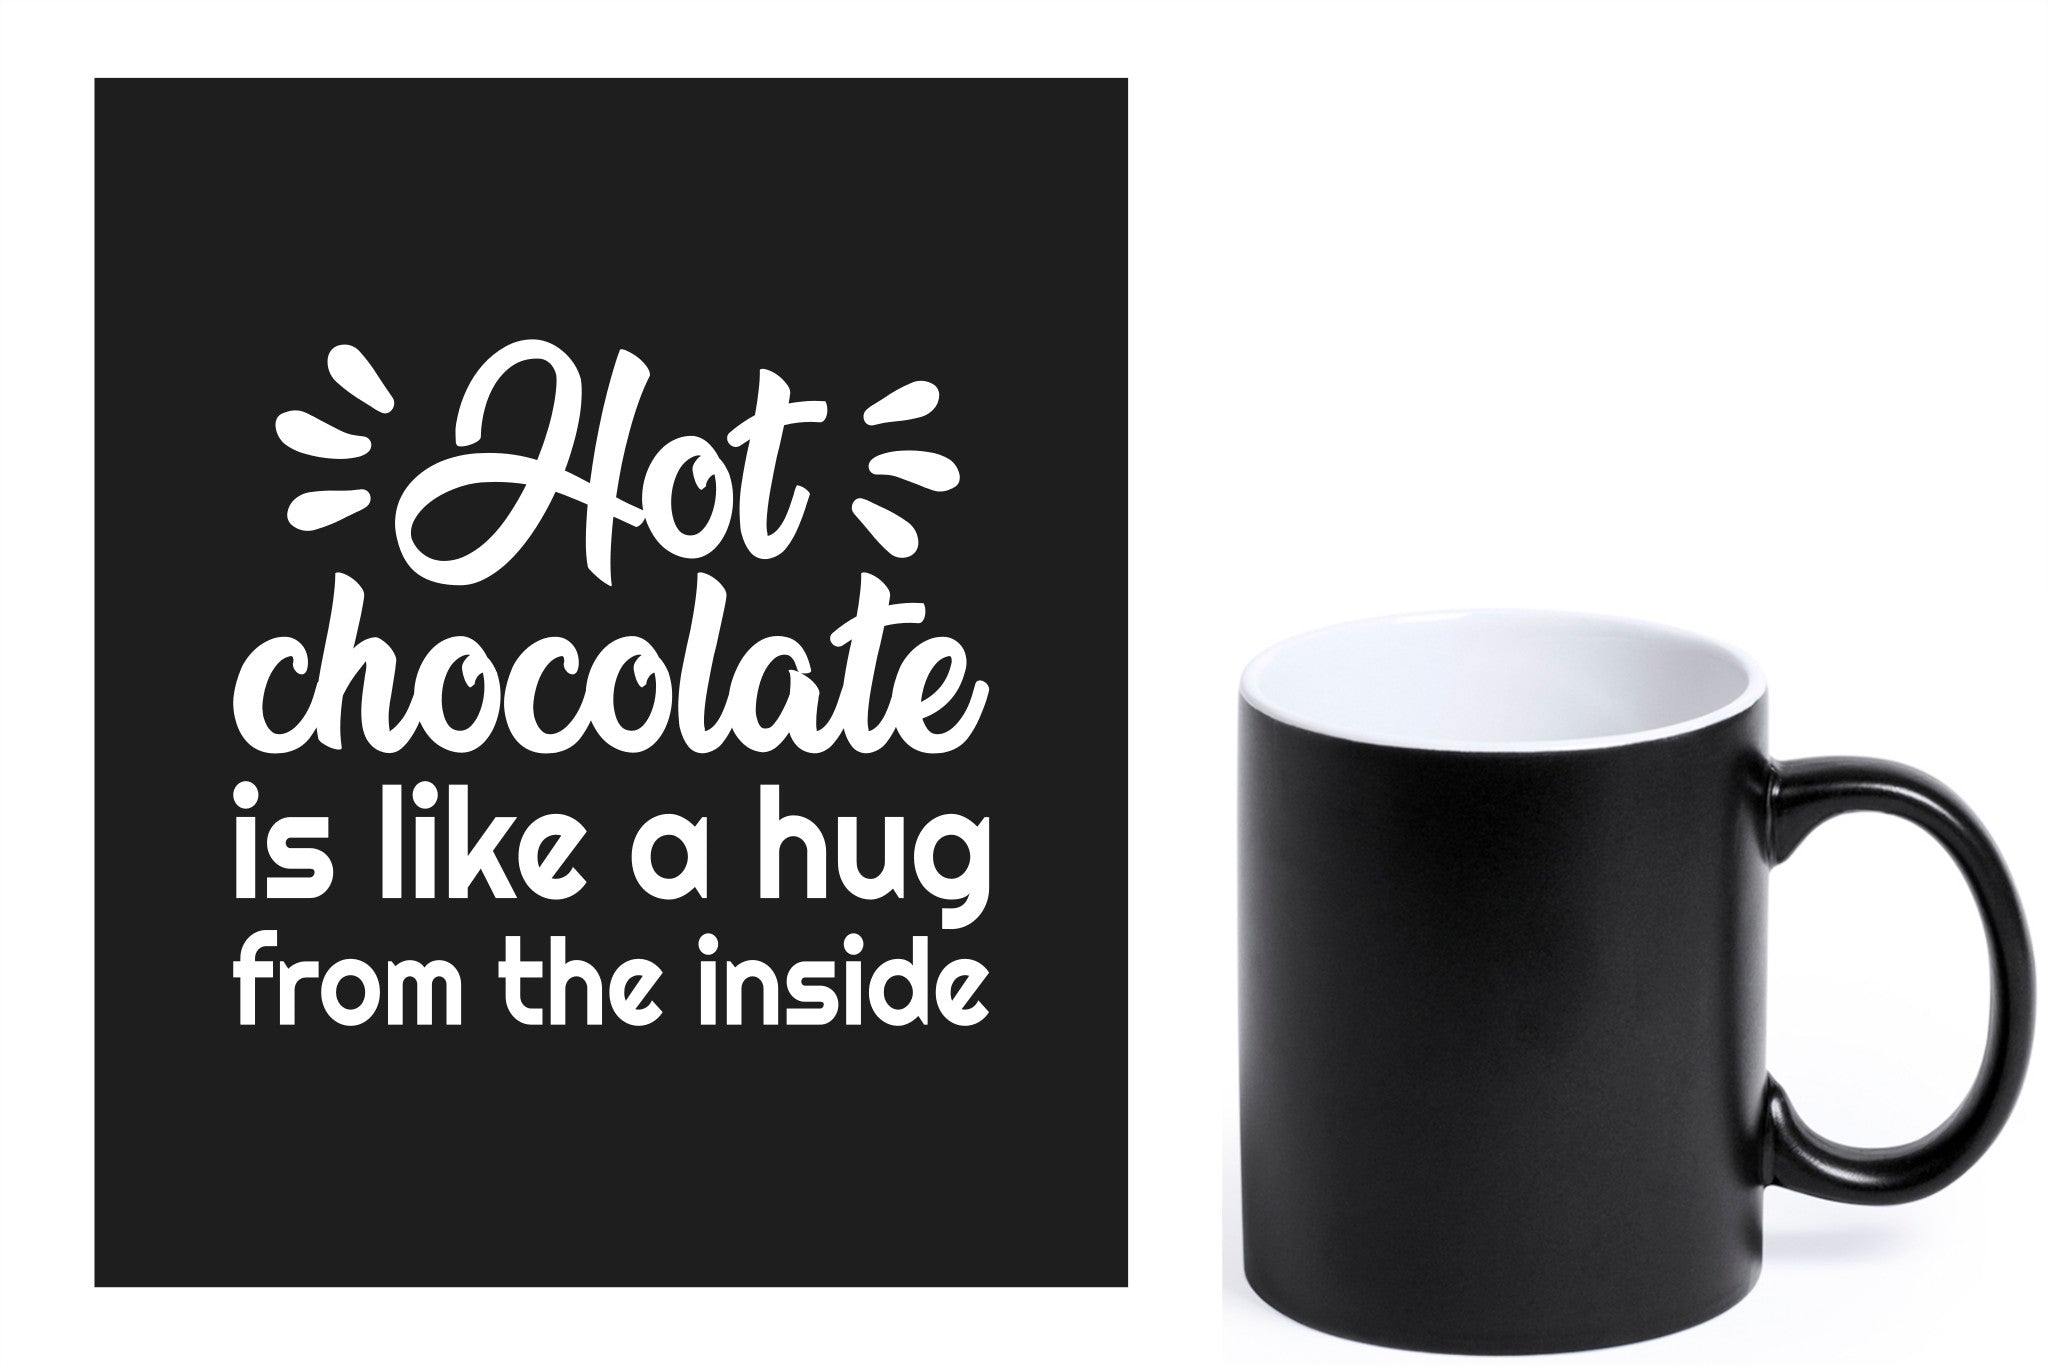 zwarte keramische mok met witte gravure  'Hot chocolate is like a hug from the inside'.